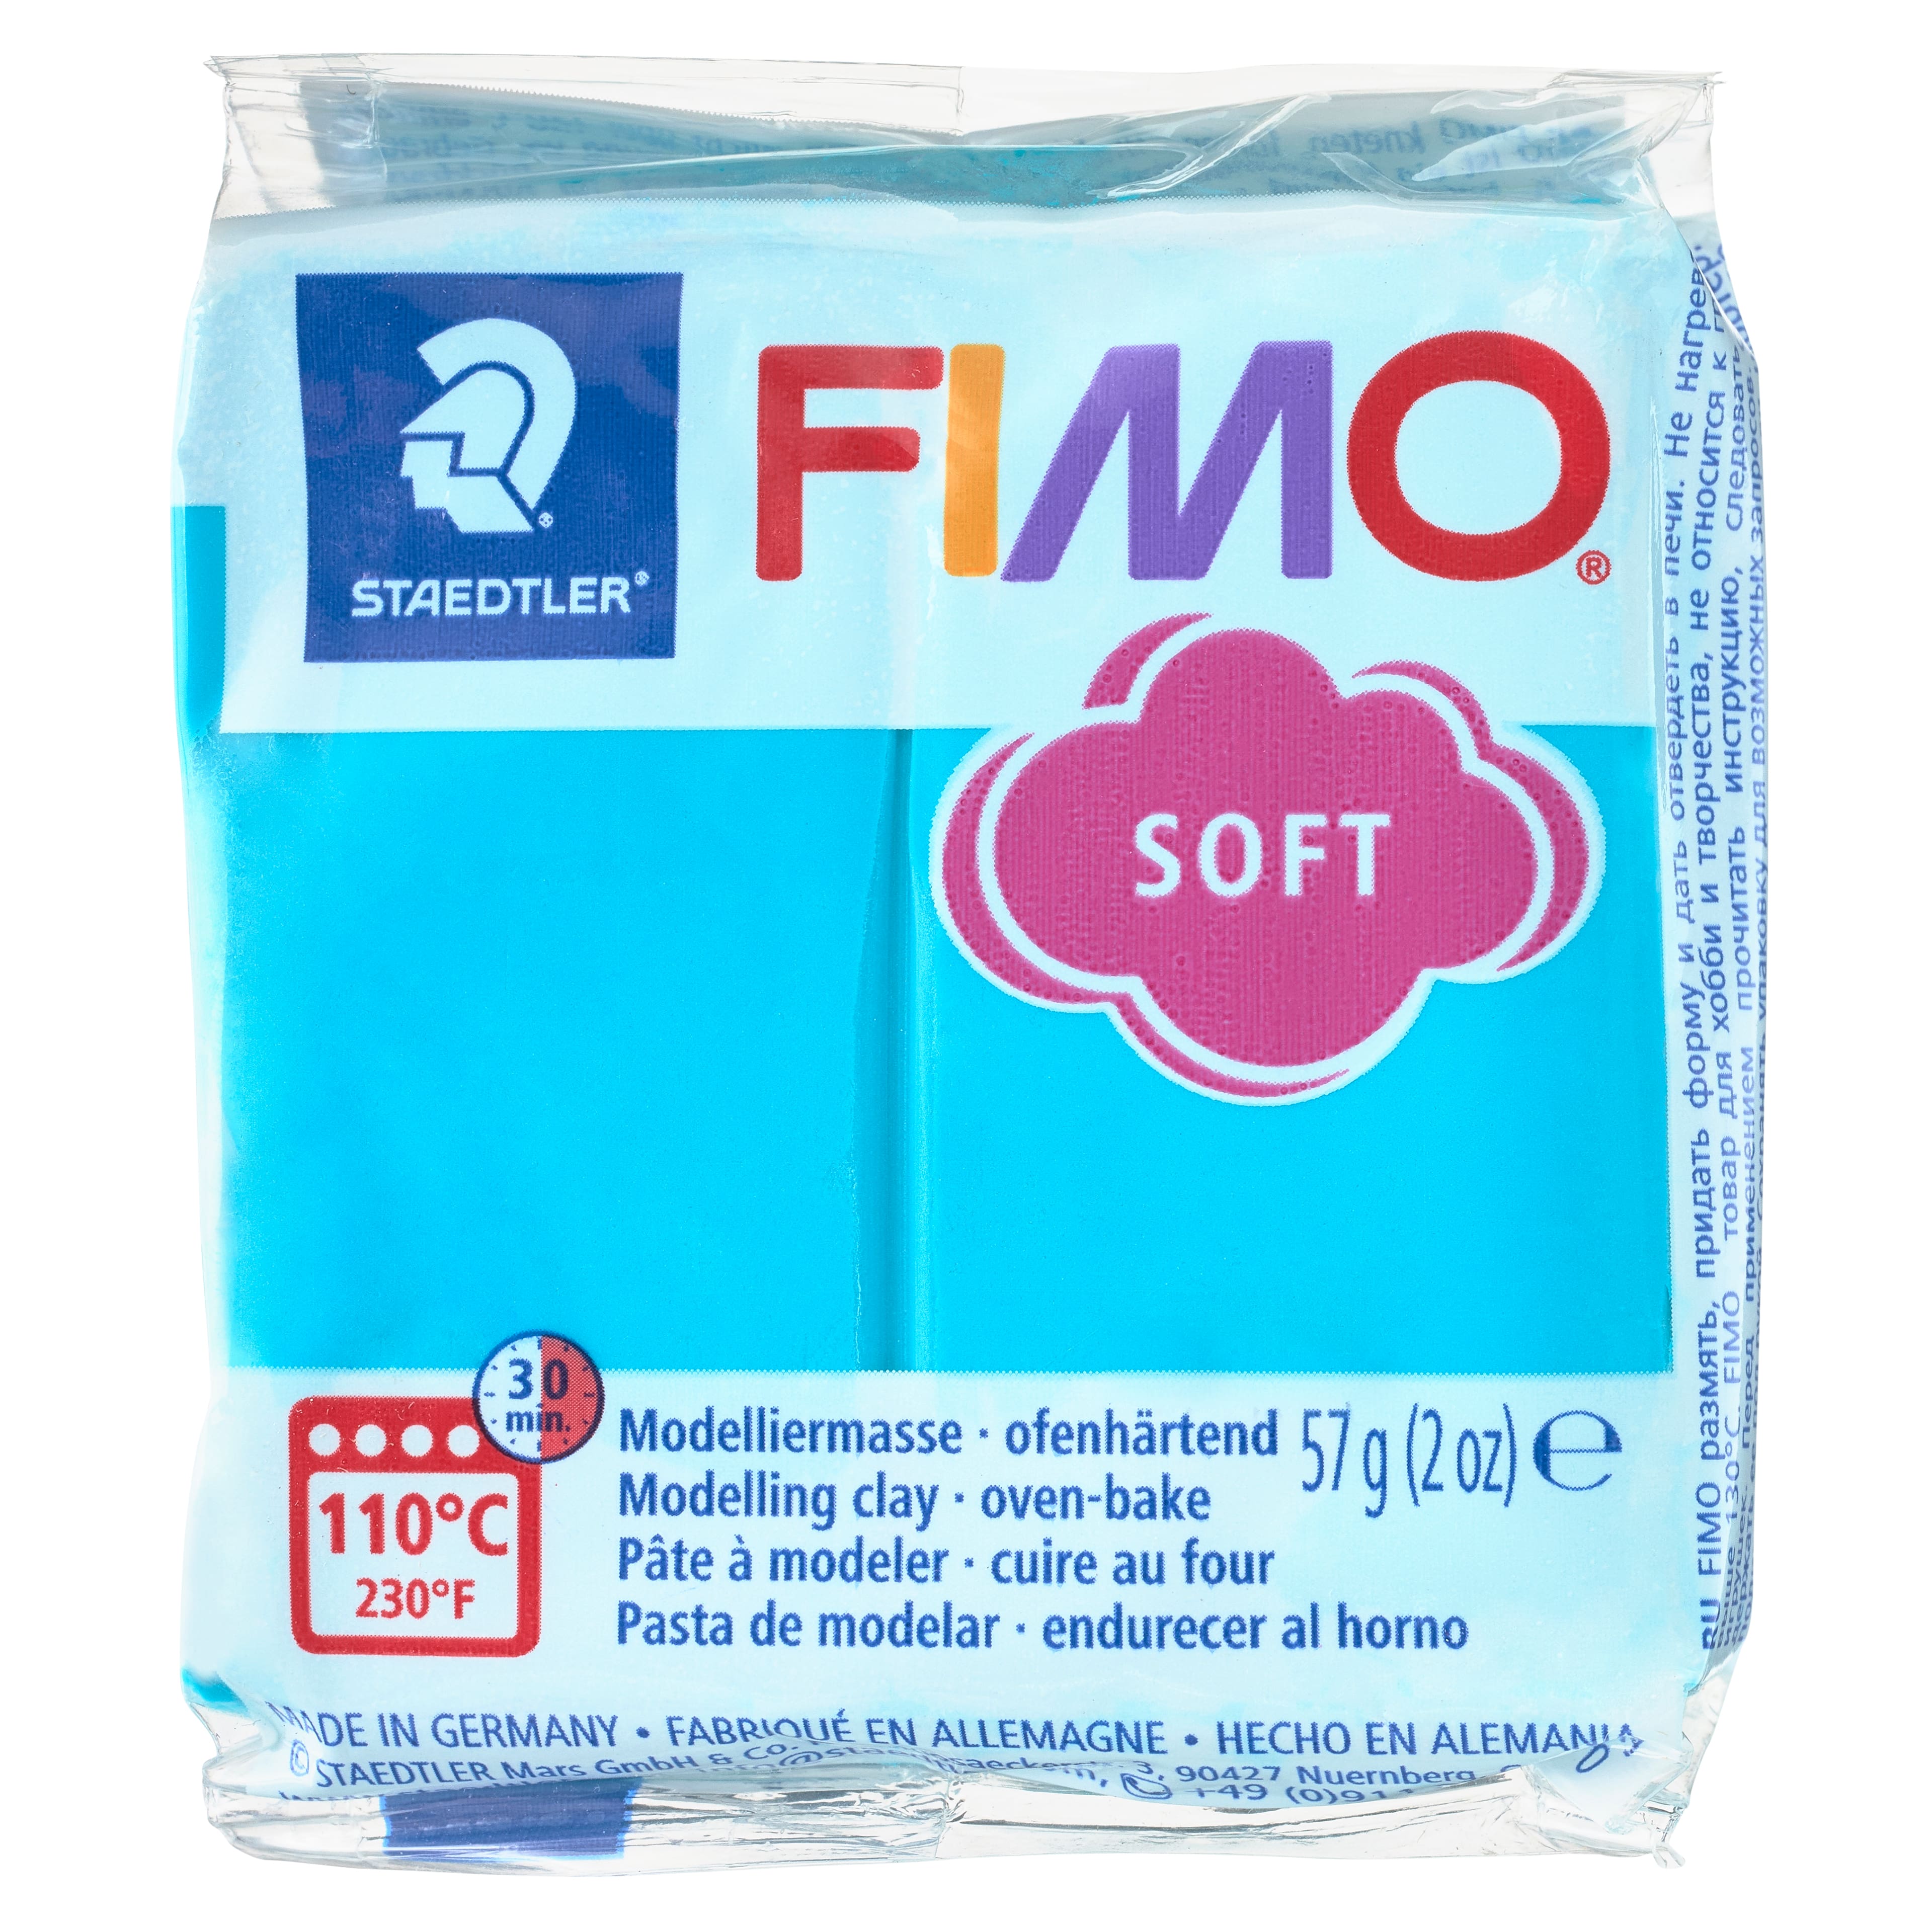 FIMO® 2oz. Soft Clay